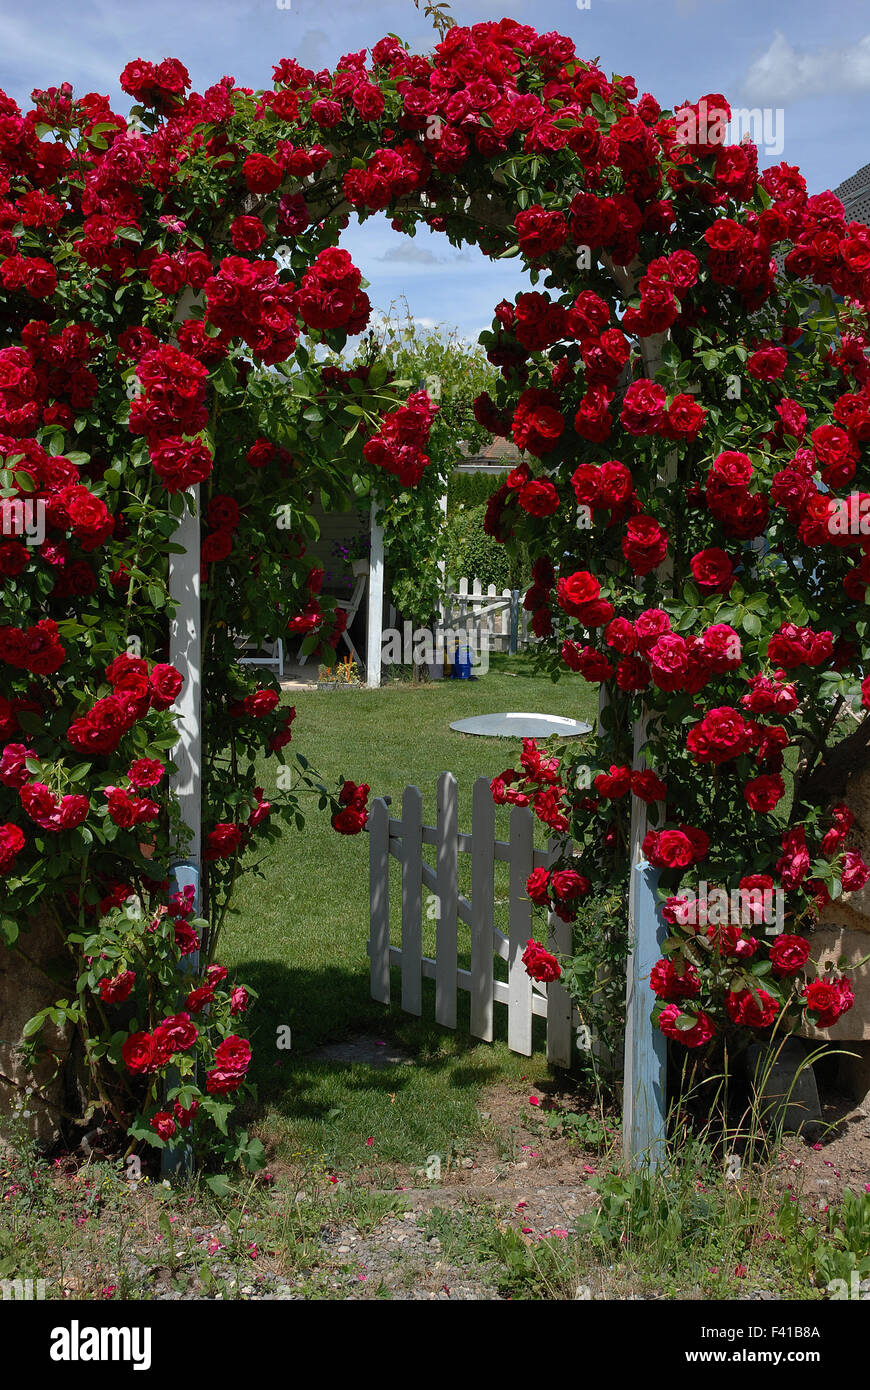 Rosas en un jardín puerta Foto de stock